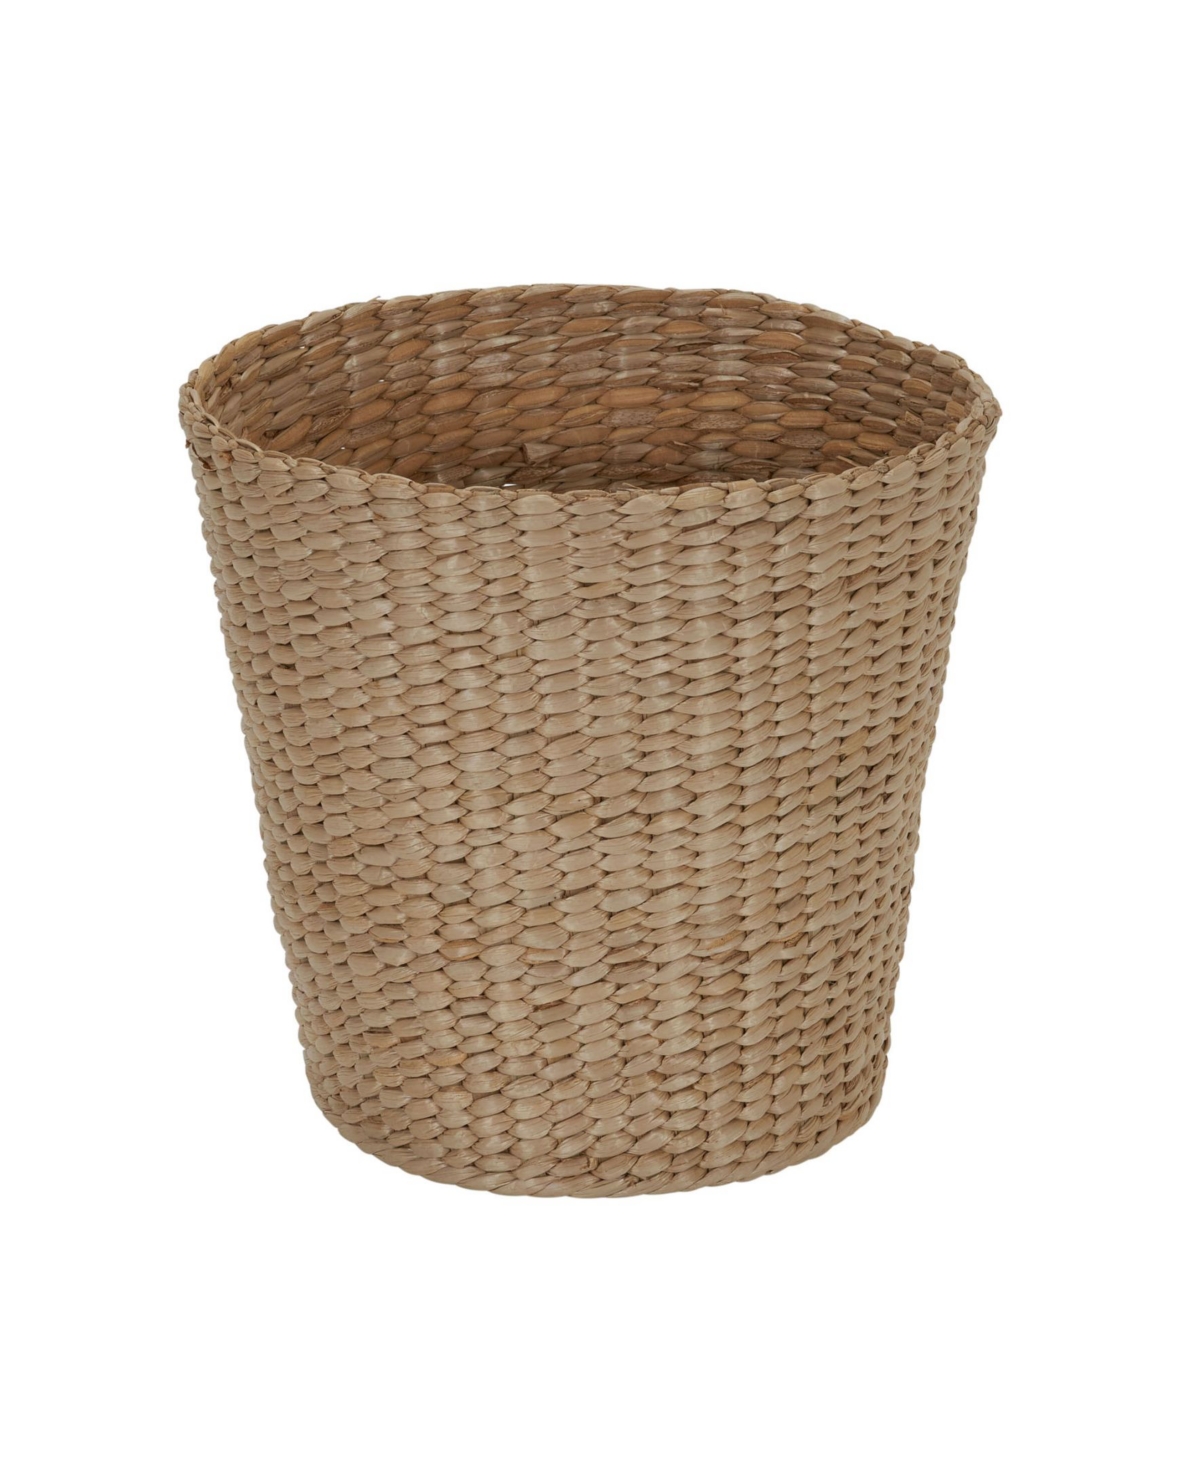 Cattail Waste Basket - Natural